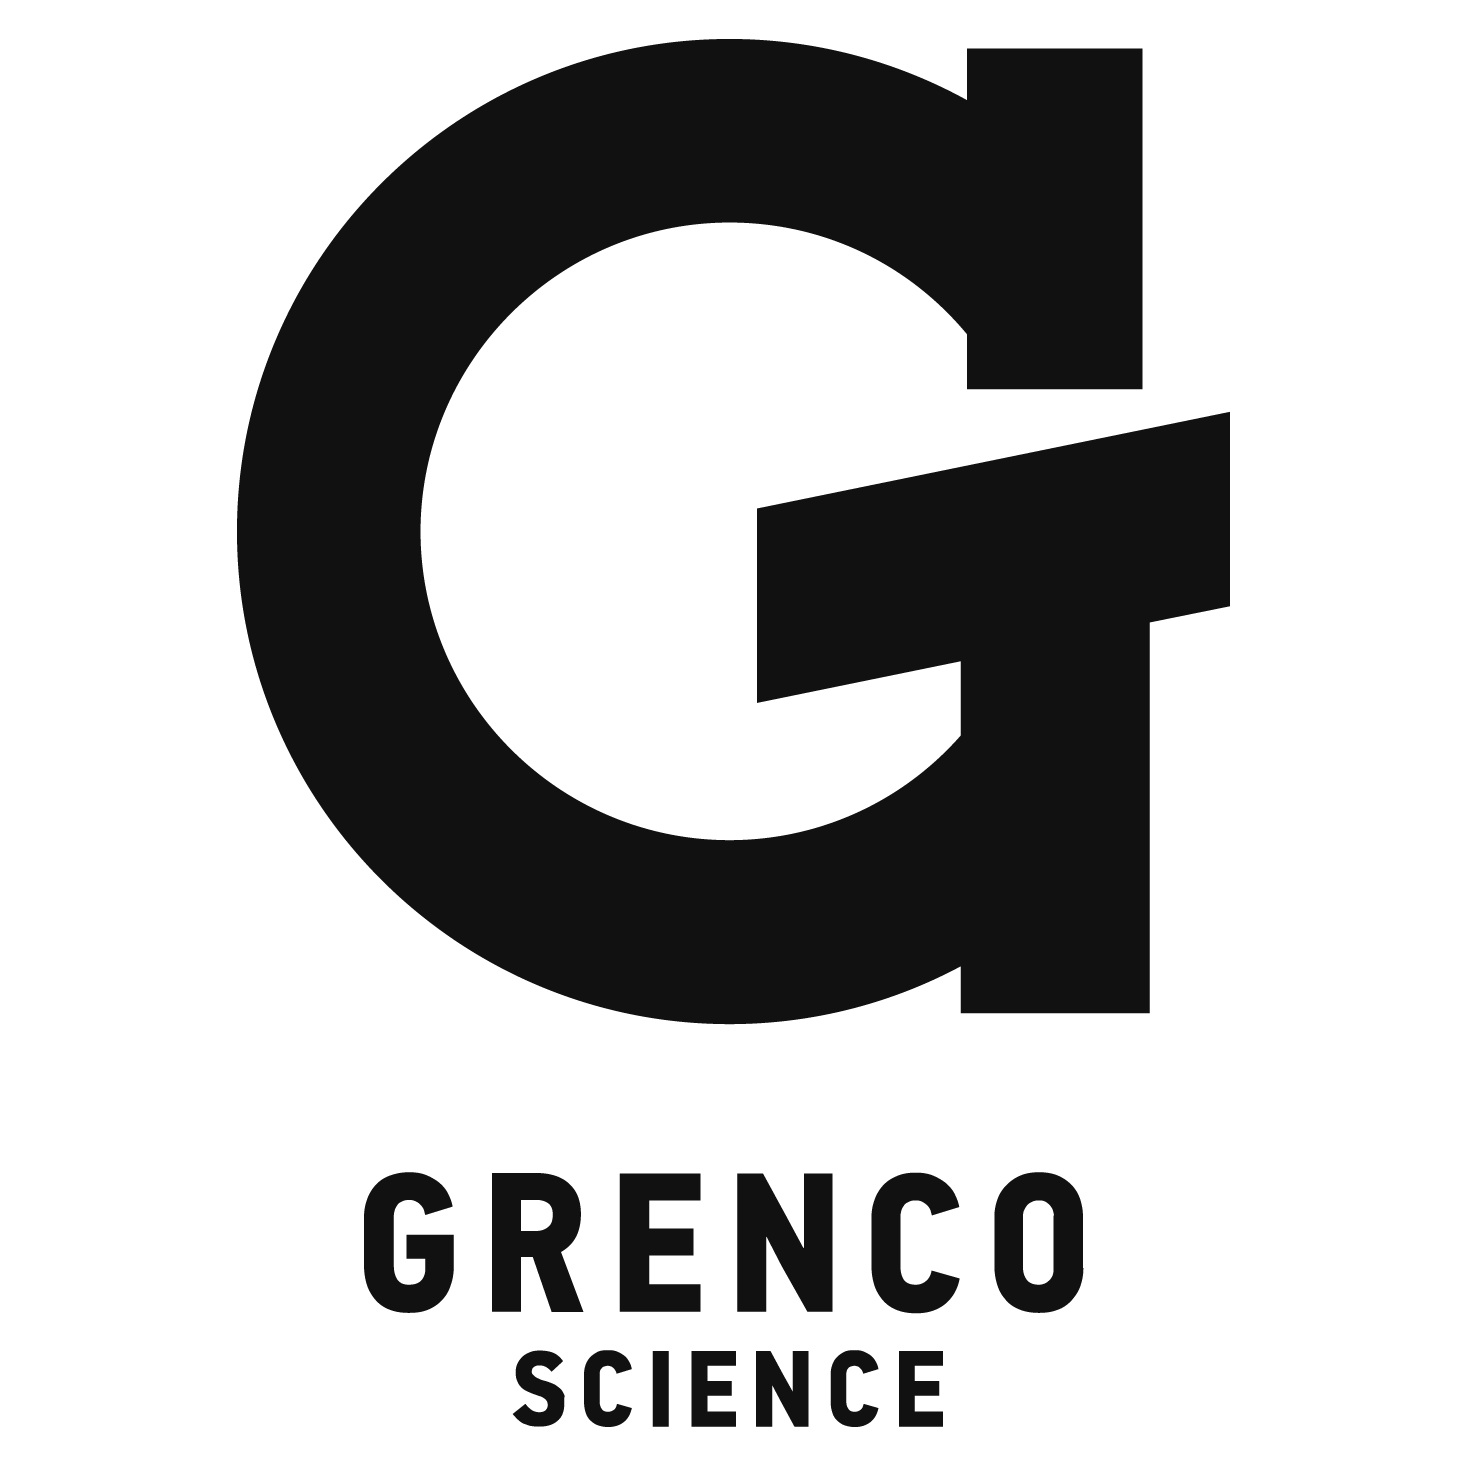 Grenco Science Logo